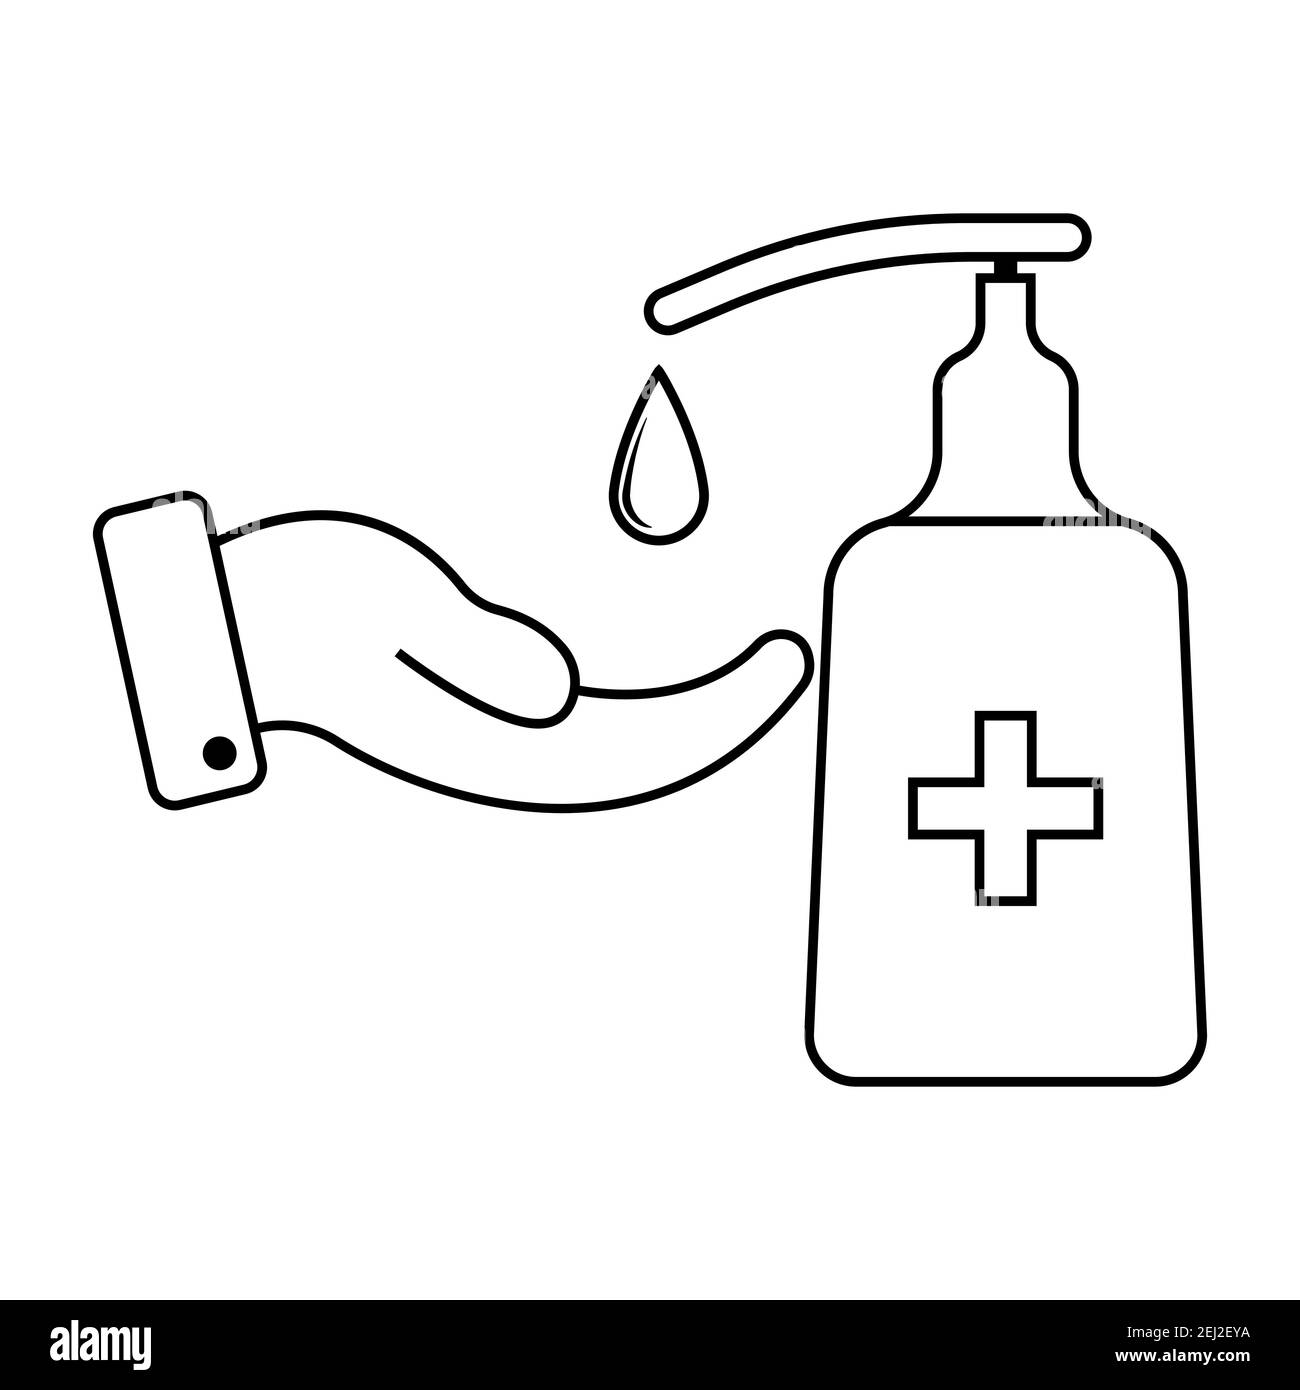 Savon liquide désinfectant antiseptique à base d'alcool, symbole d'icône vecteur sur la main goutte d'eau désinfectant liquide savon symbole d'hygiène Illustration de Vecteur